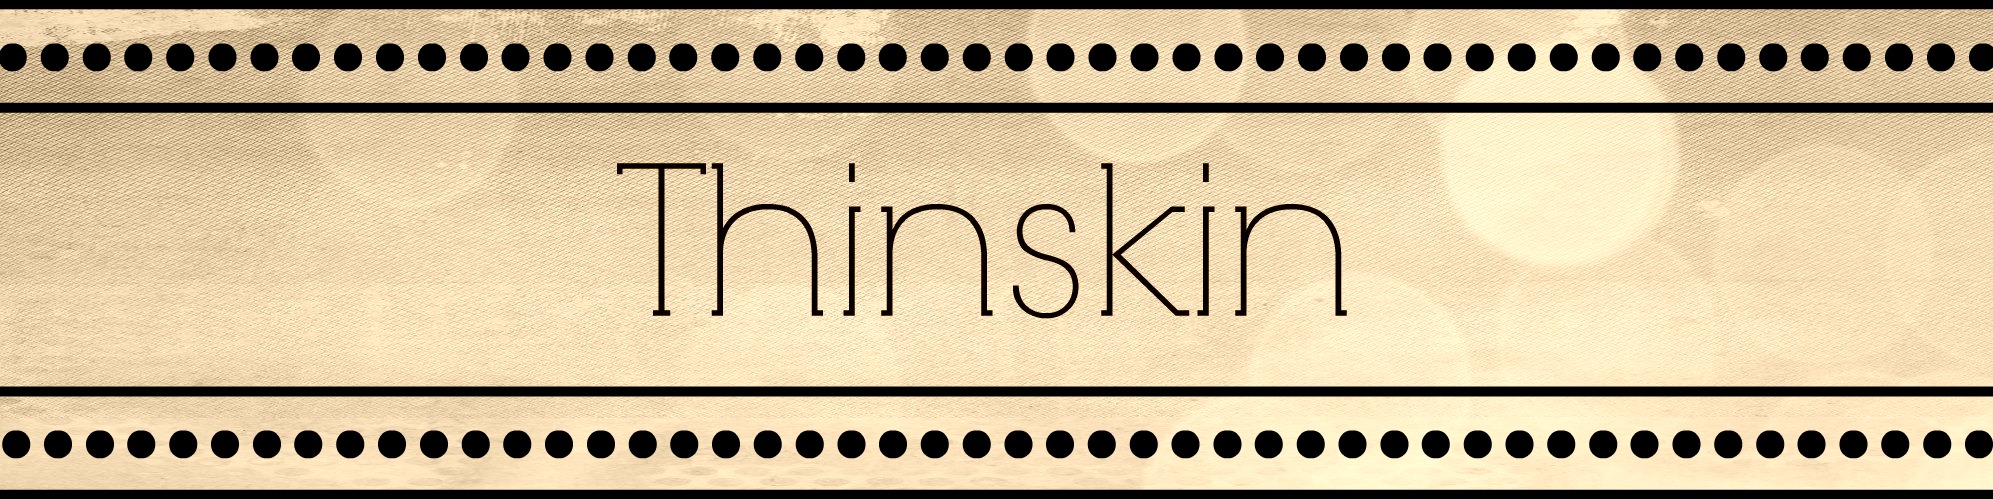 Thinskin